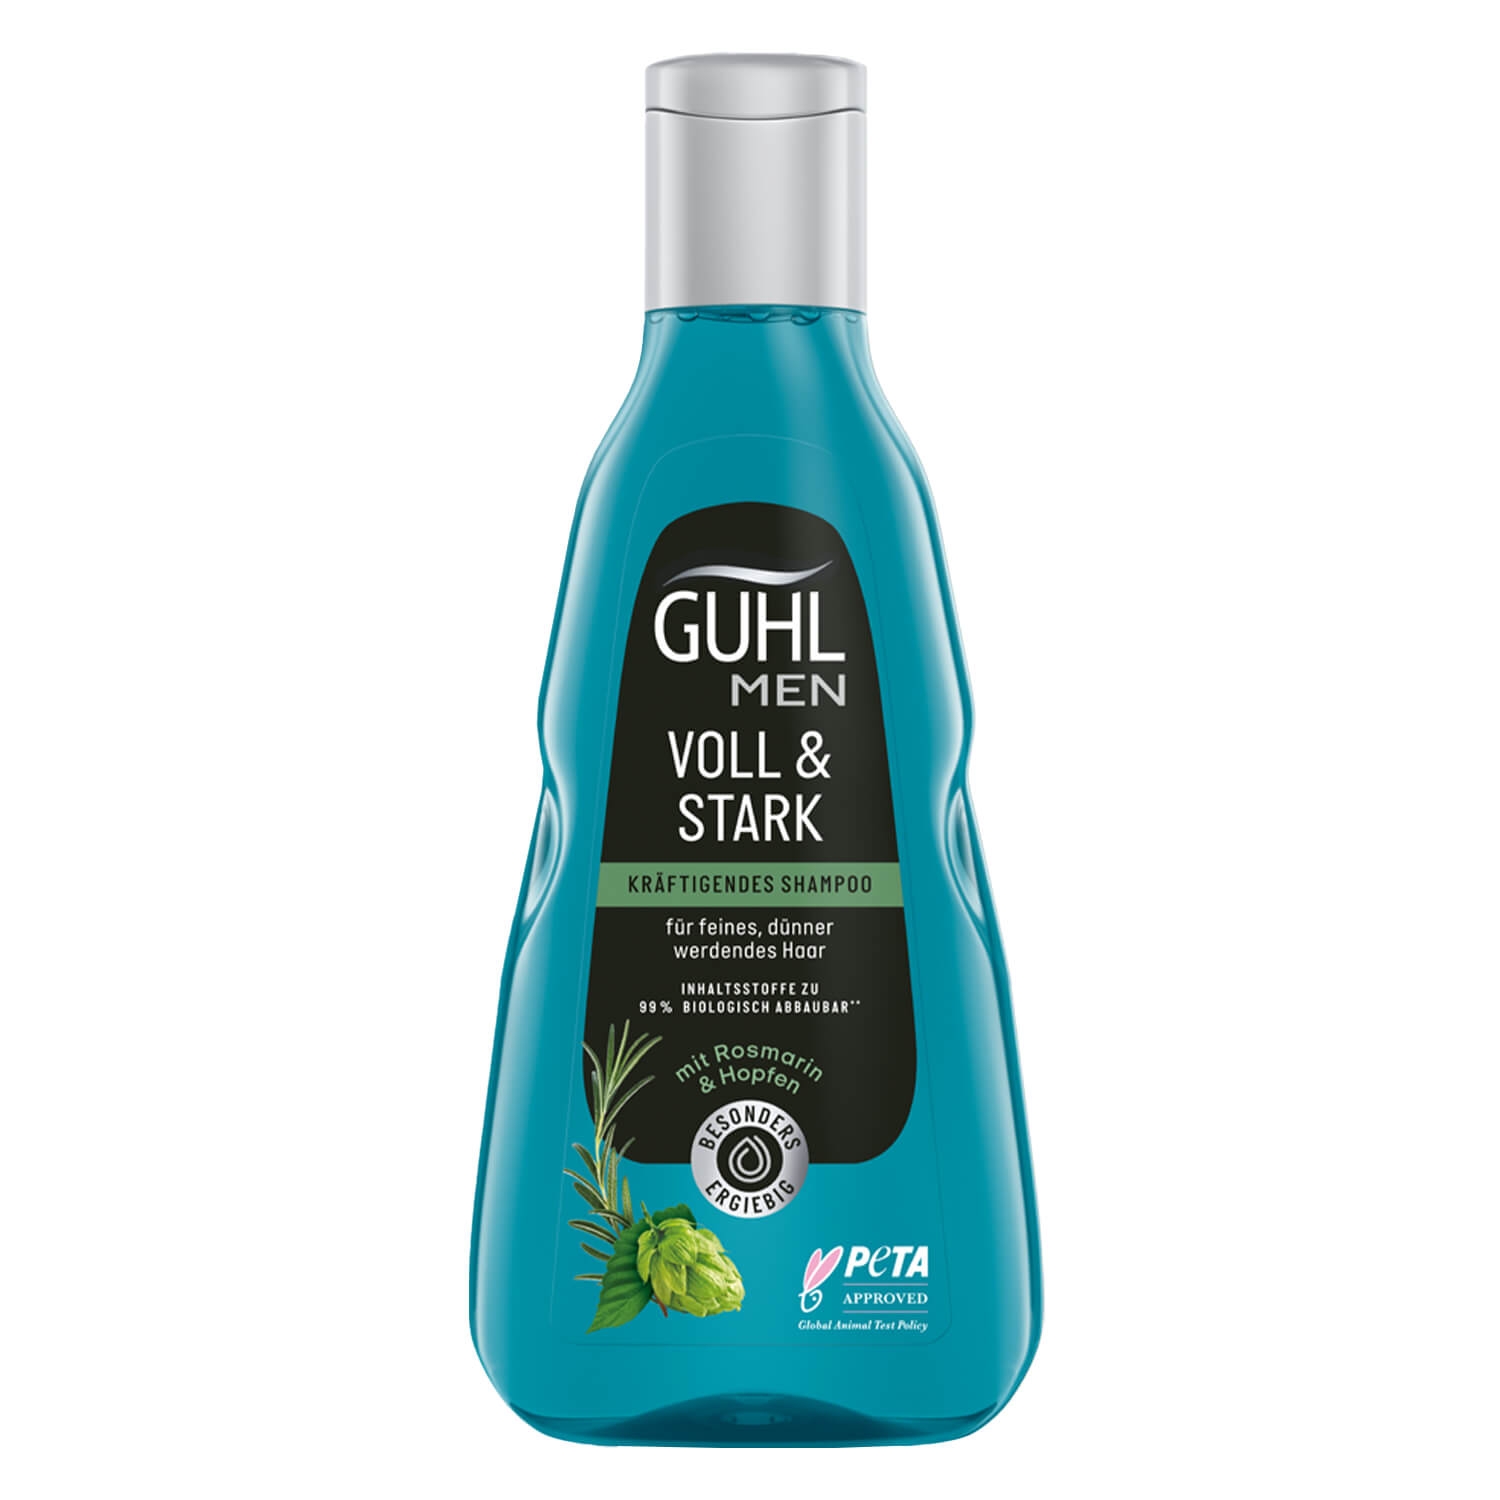 Produktbild von GUHL - MEN VOLL & STARK Kräftigendes Shampoo